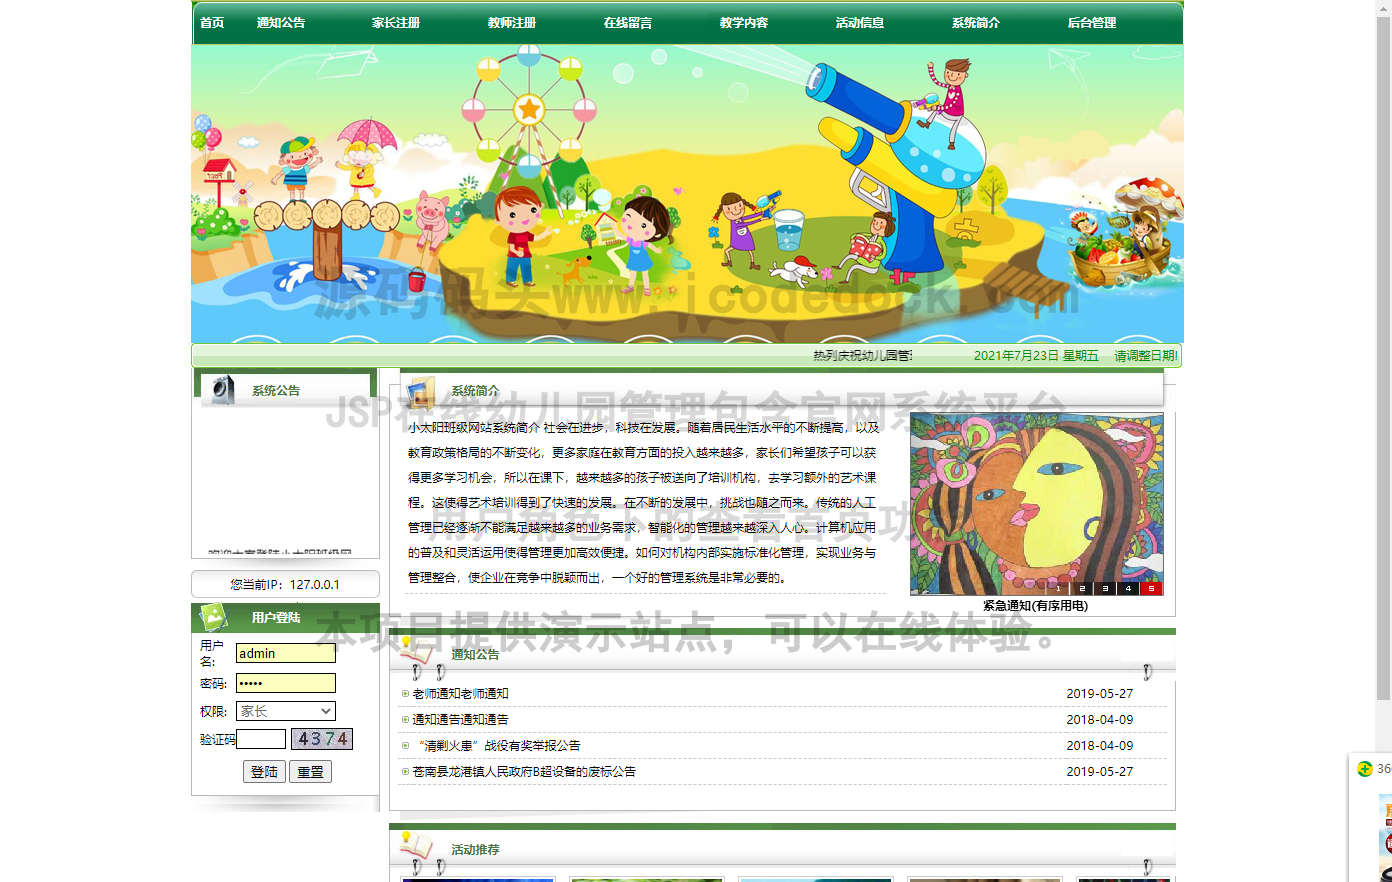 源码码头-JSP在线幼儿园管理包含官网系统平台-用户角色-查看首页